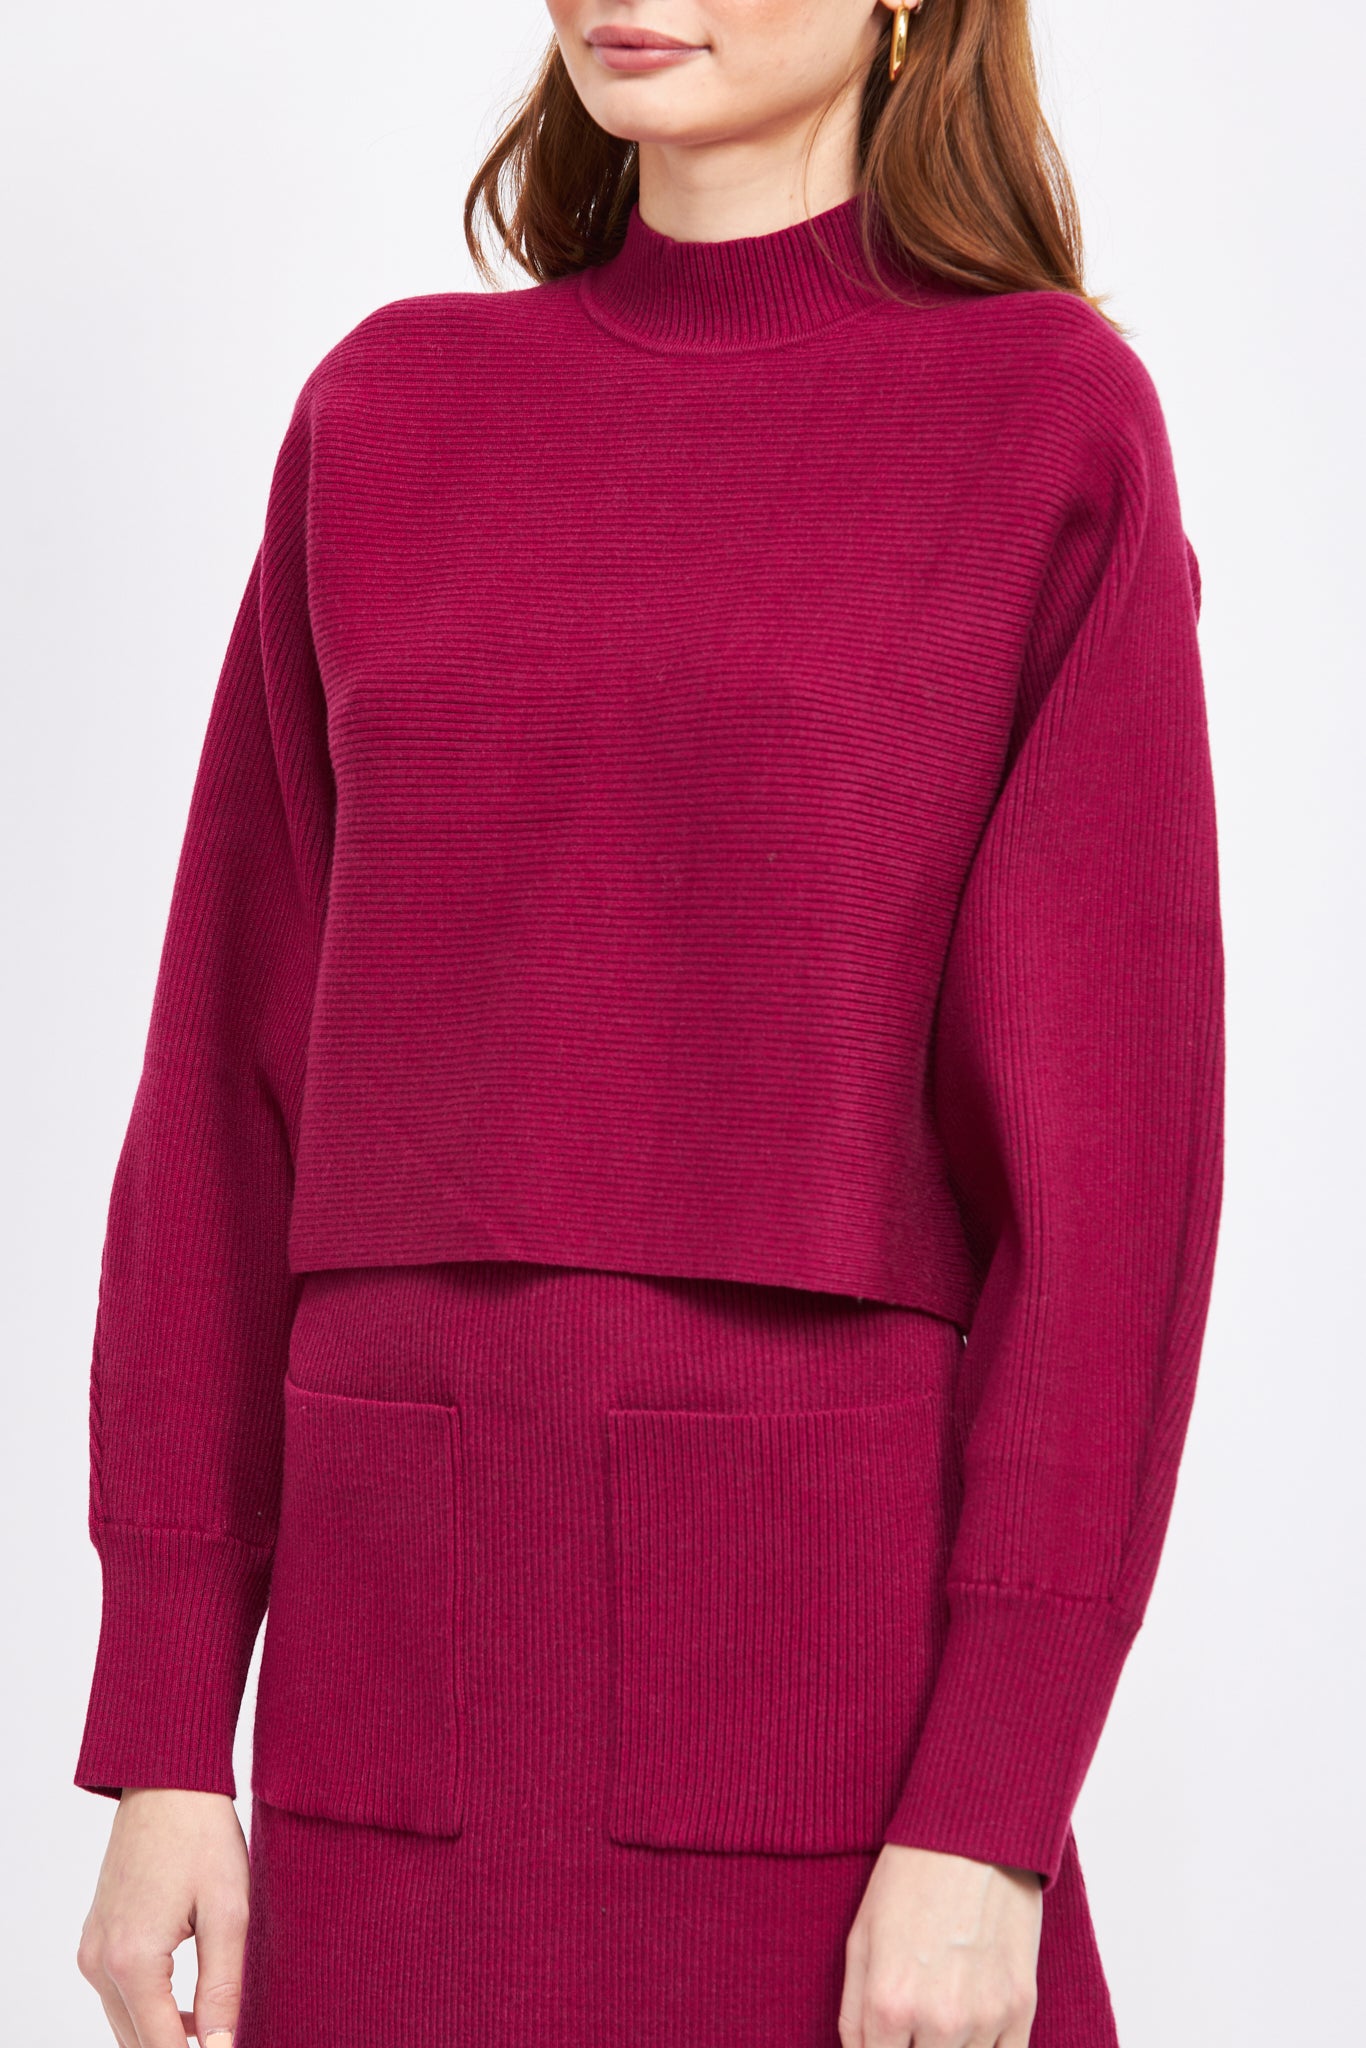 Lisette Pullover Sweater